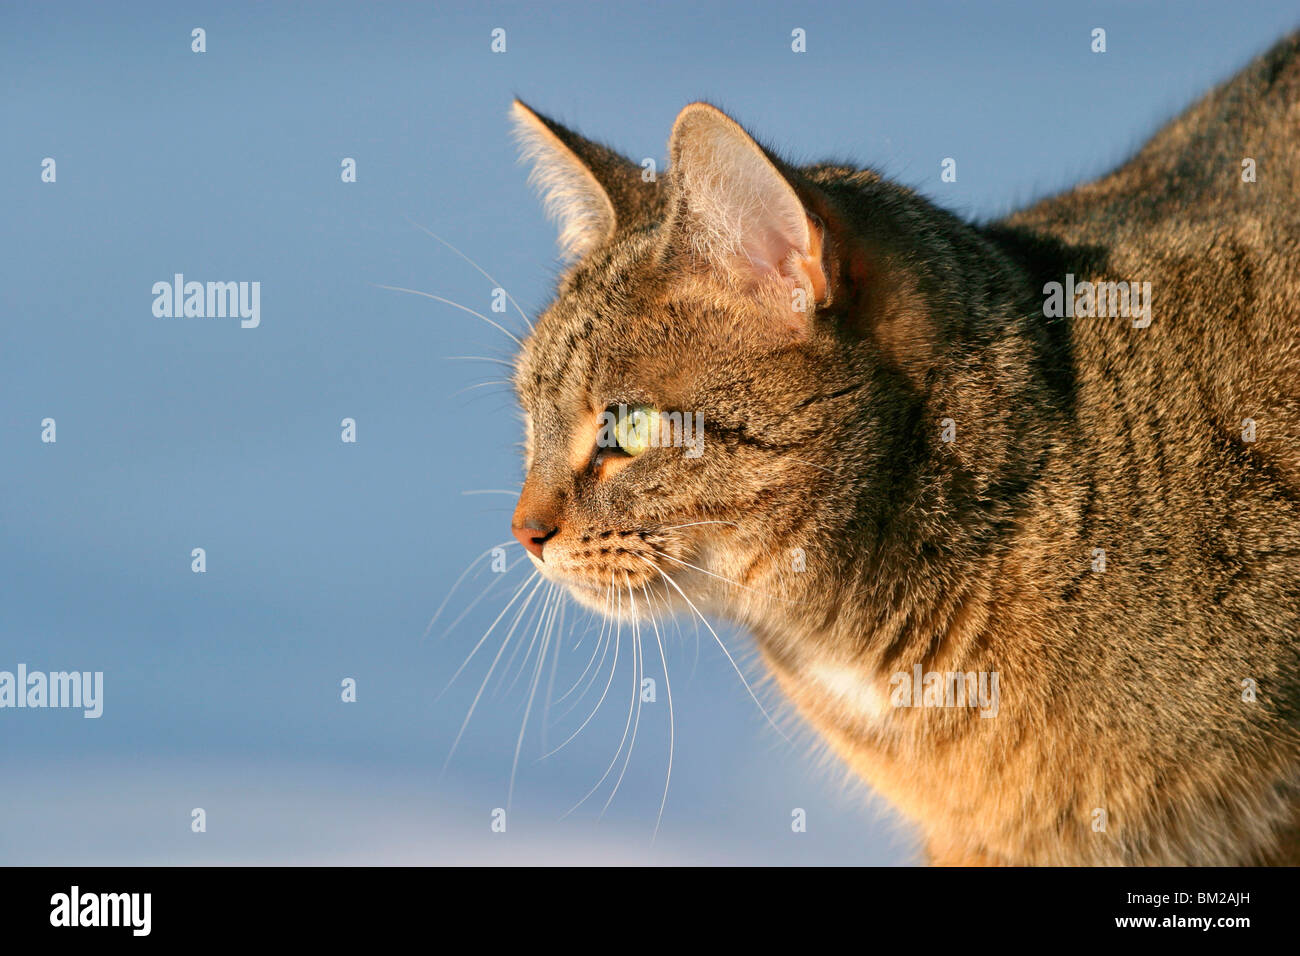 Katzen / Cat Portrait Stock Photo